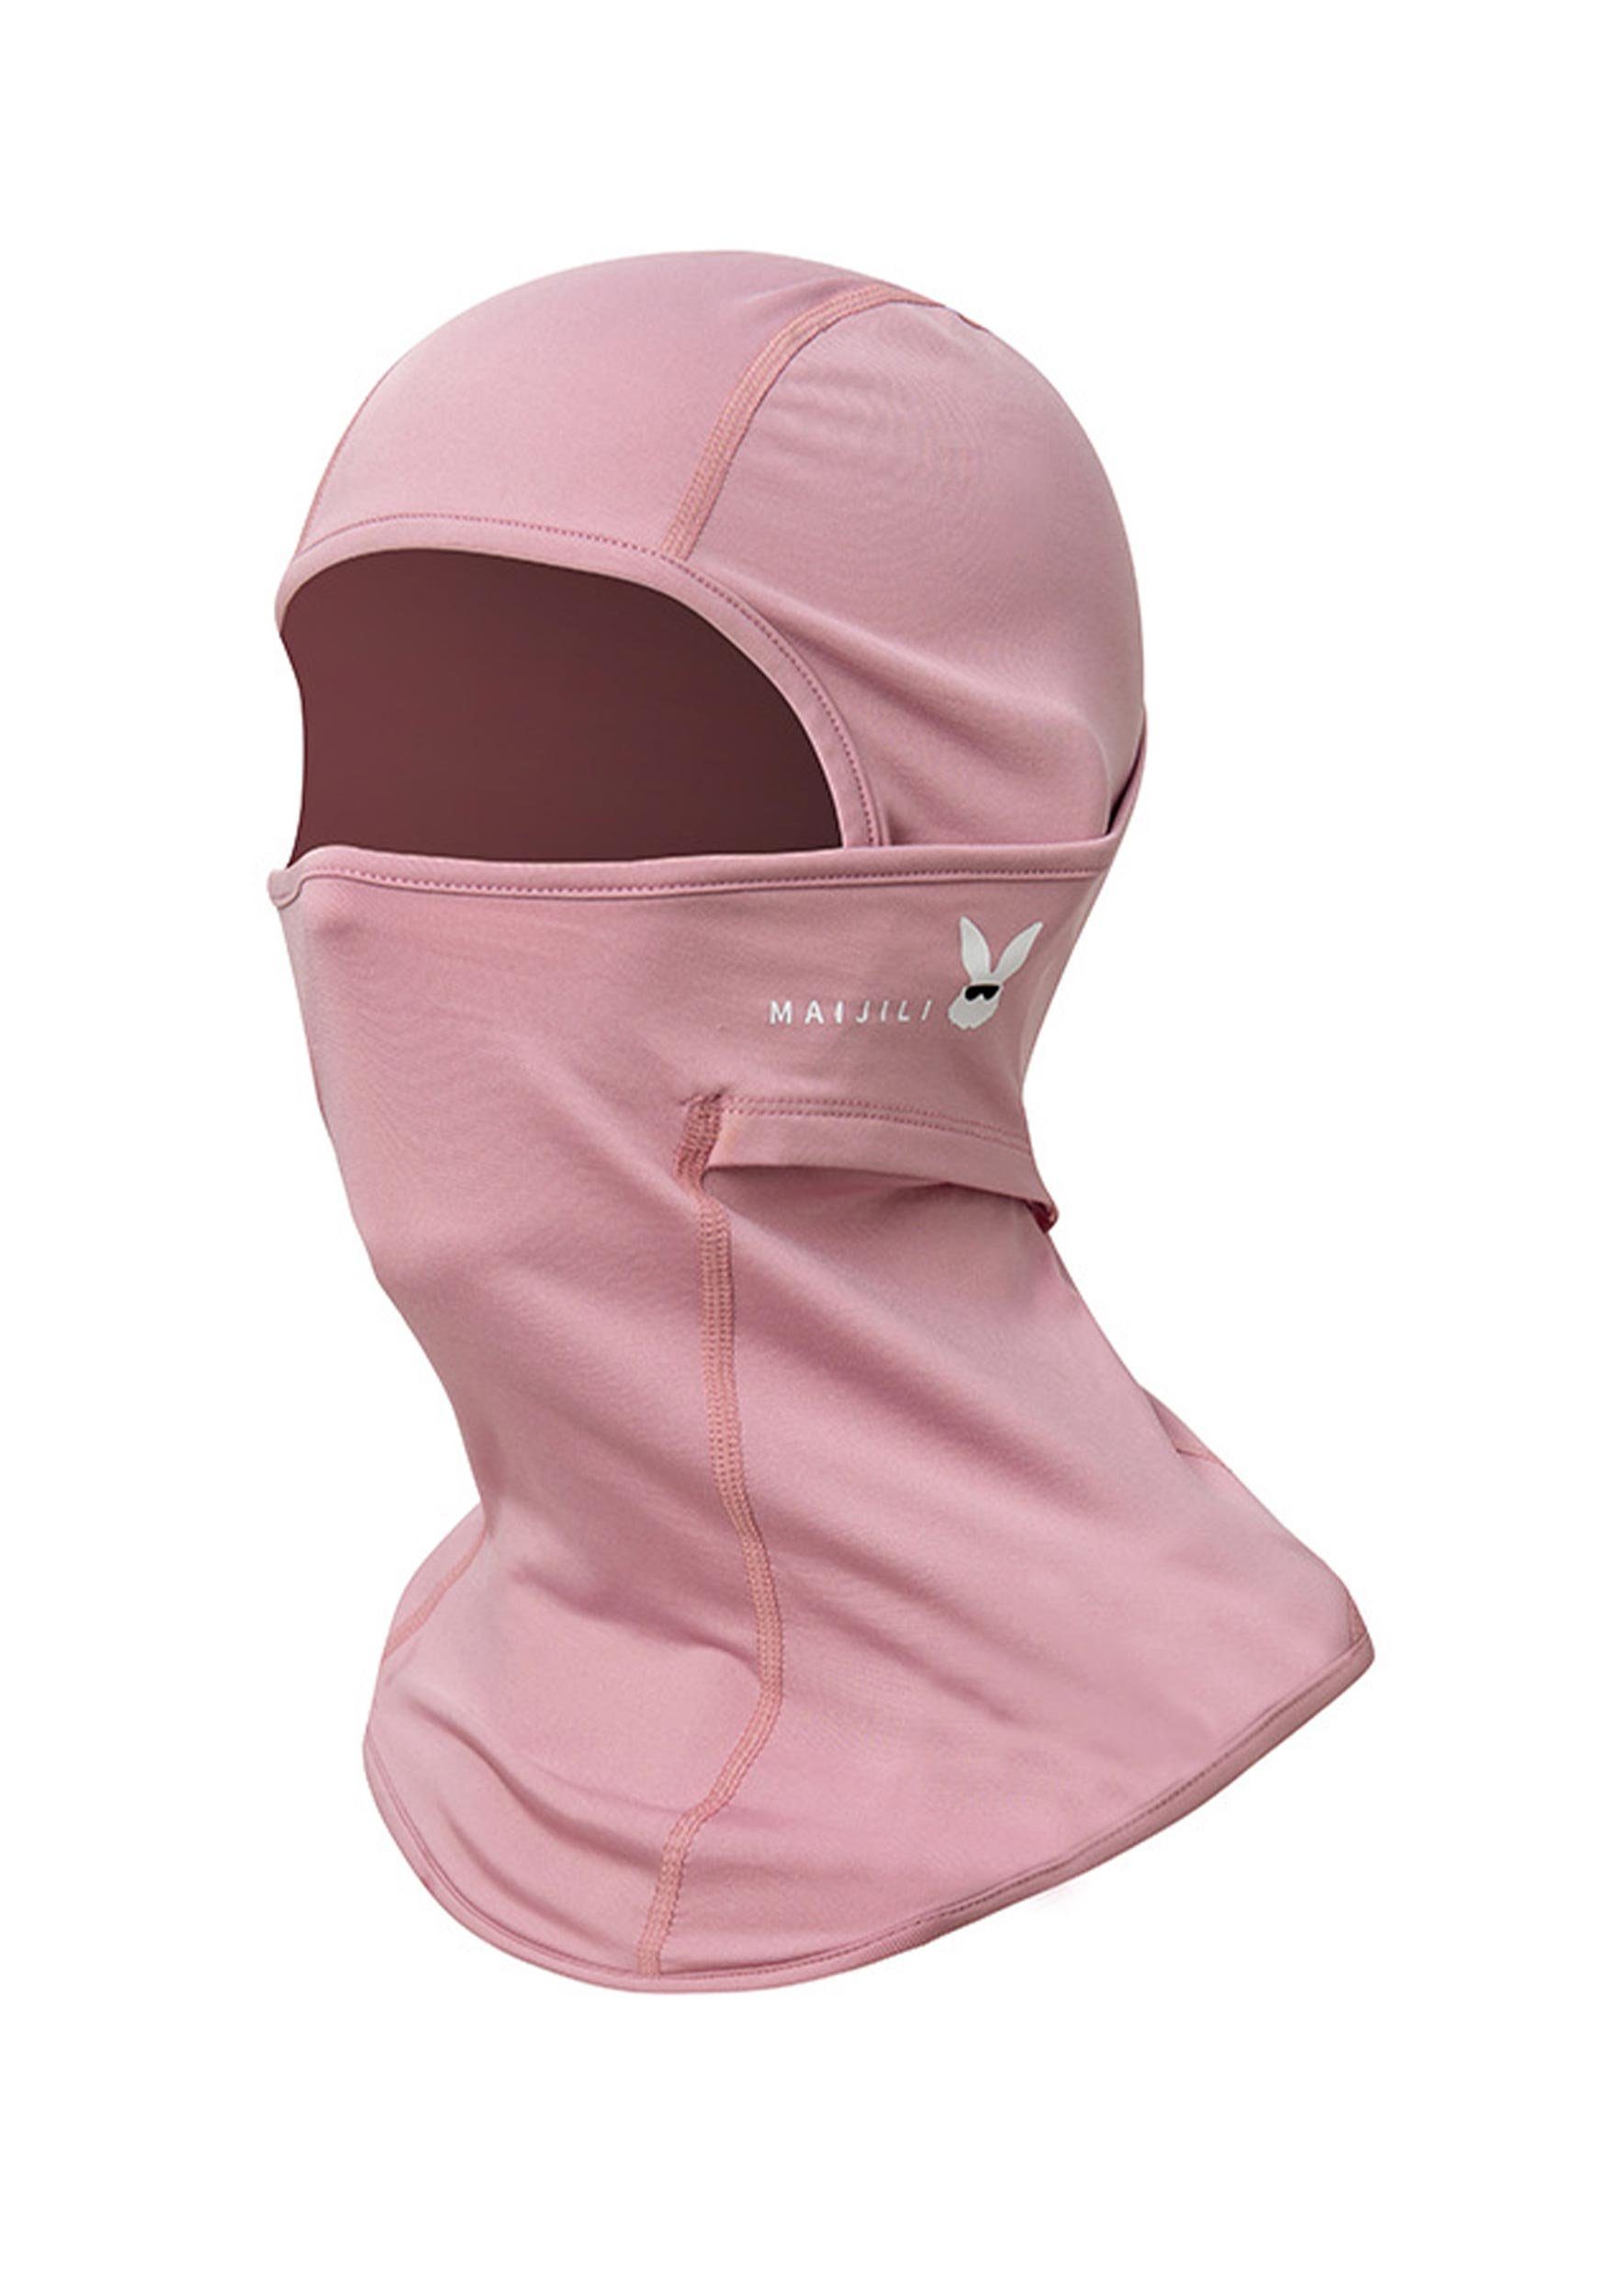 UV-Strahlen Umfassenden Widersteht für Sturmhaube Schutz Rosa Skimaske MAGICSHE